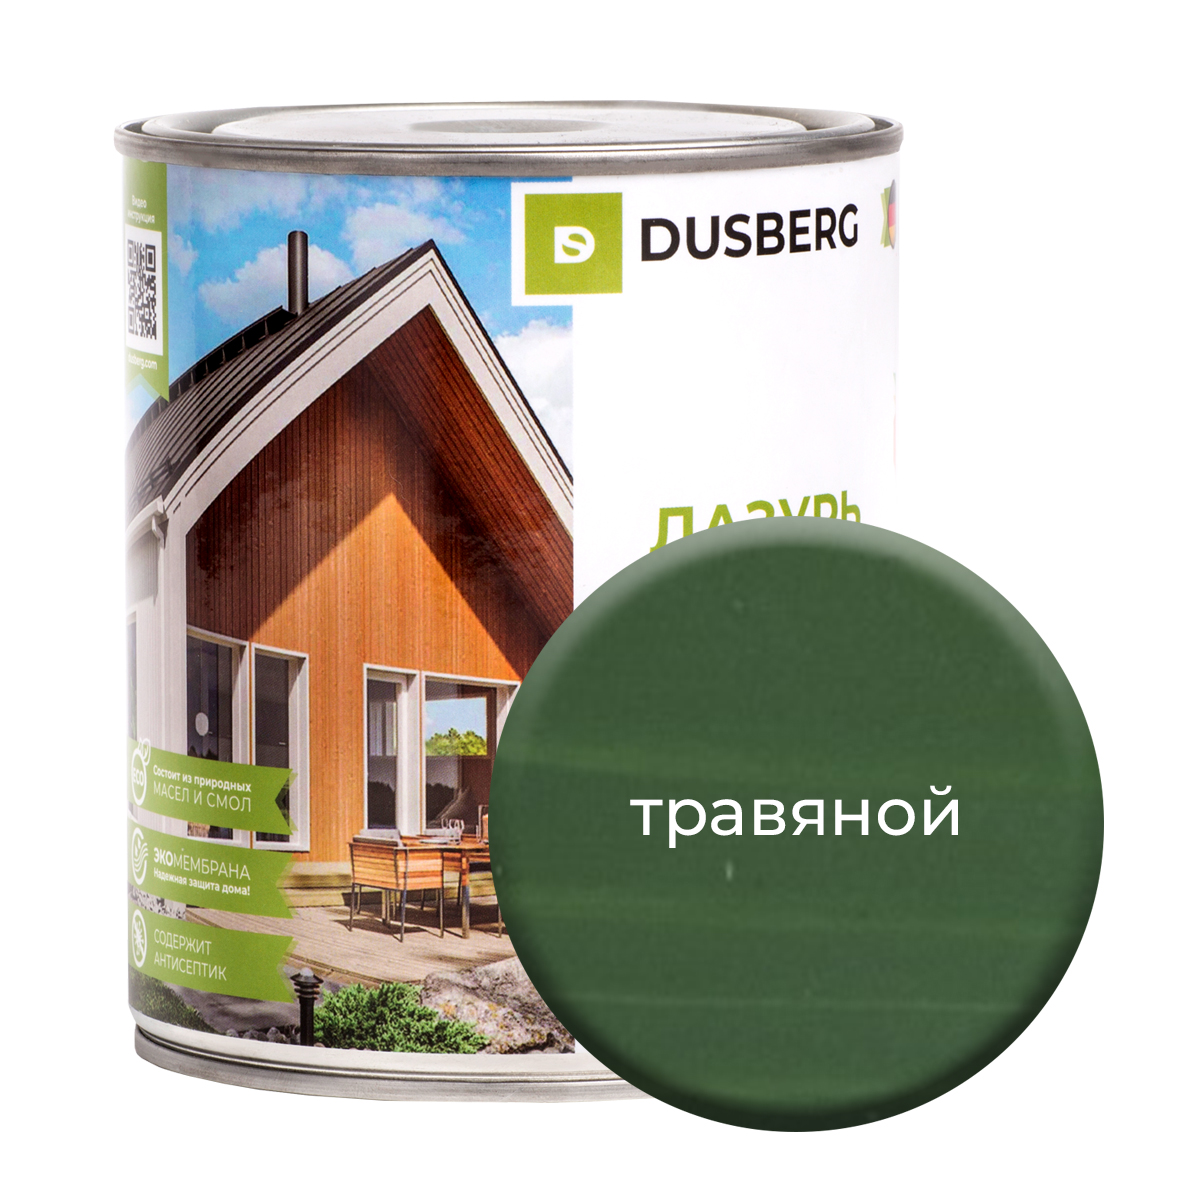 Лазурь Dusberg для дерева 750 мл Травяной чай травяной biopractika стопстресс 40 гр